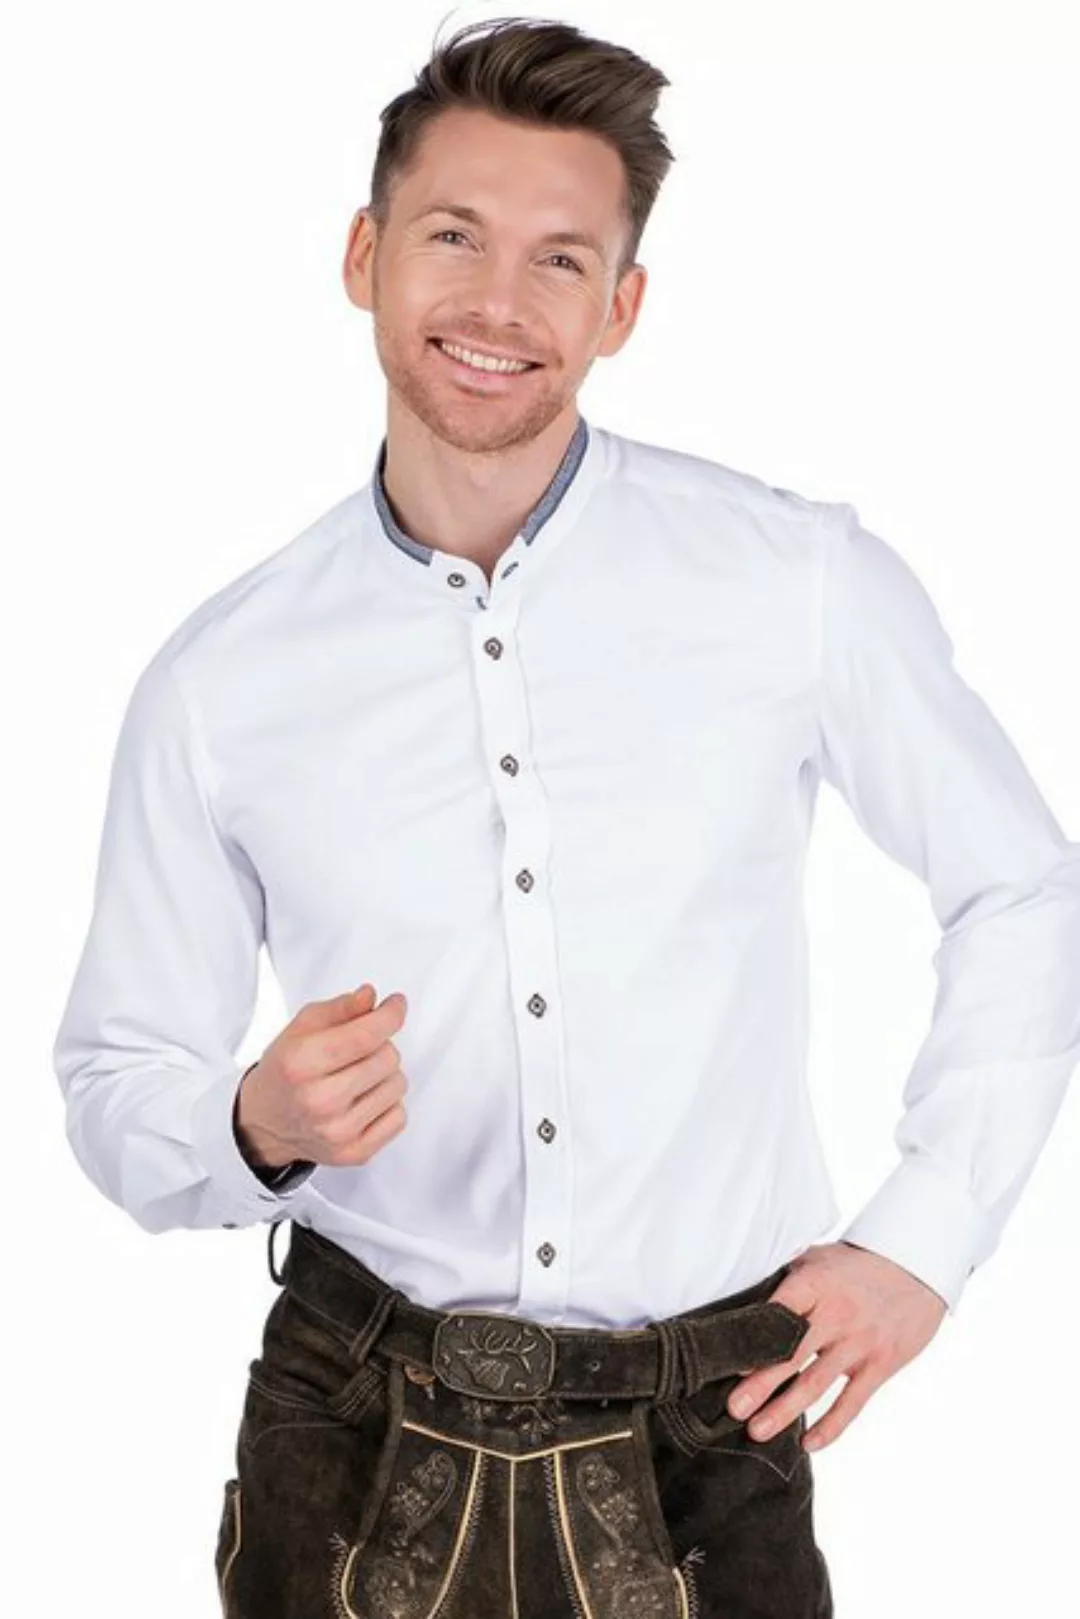 Spieth & Wensky Trachtenhemd Trachtenhemd - DUSTIN - weiß/dunkelblau, weiß/ günstig online kaufen